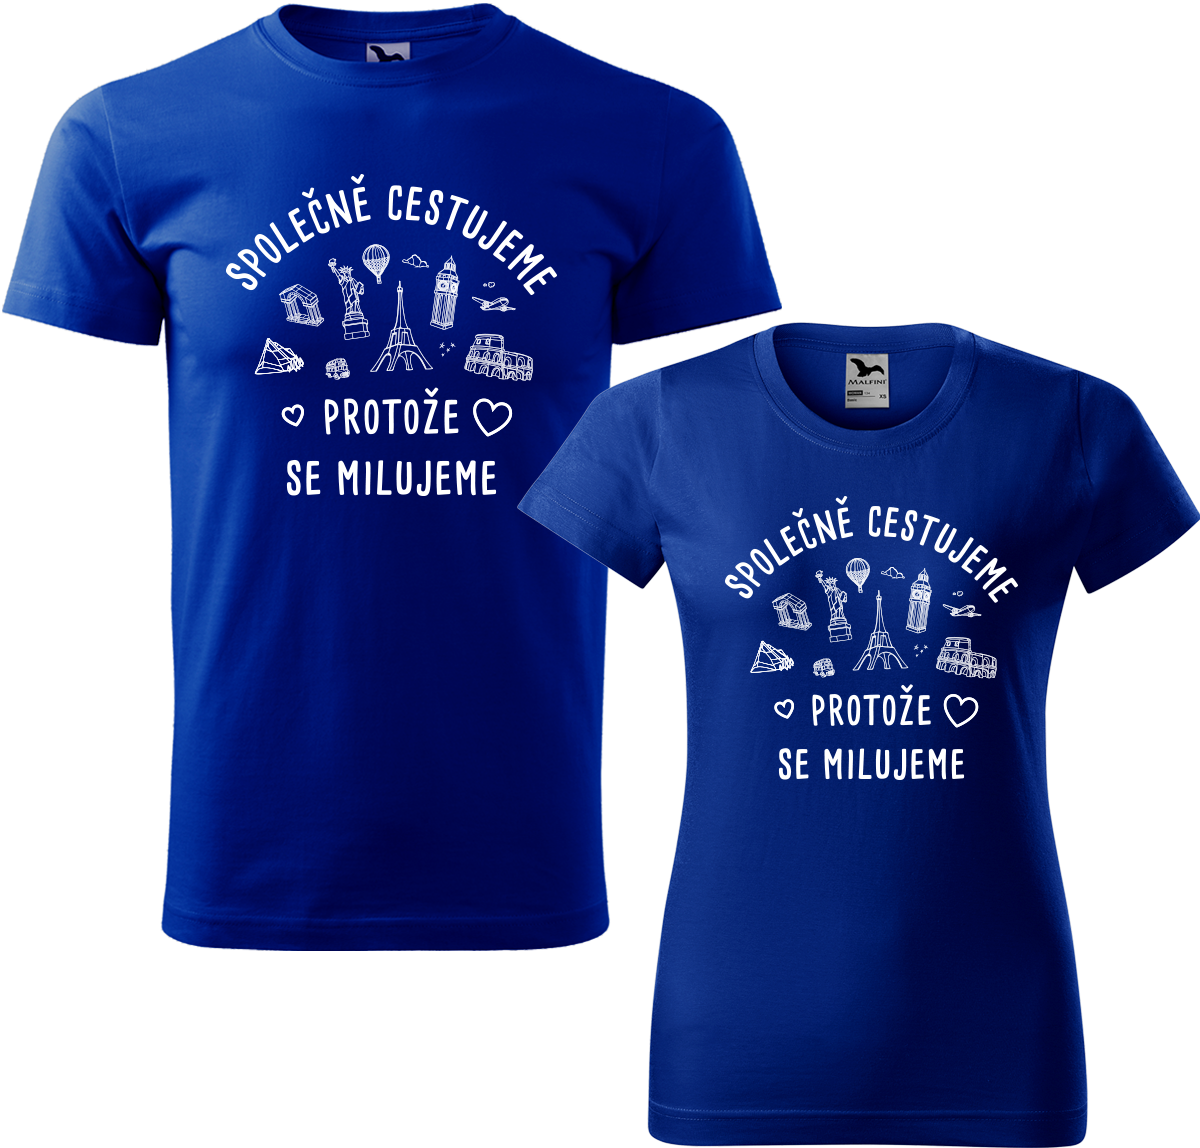 Tričko pro páry - Společně cestujeme protože se milujeme Barva: Královská modrá (05), Velikost dámské tričko: S, Velikost pánské tričko: XL